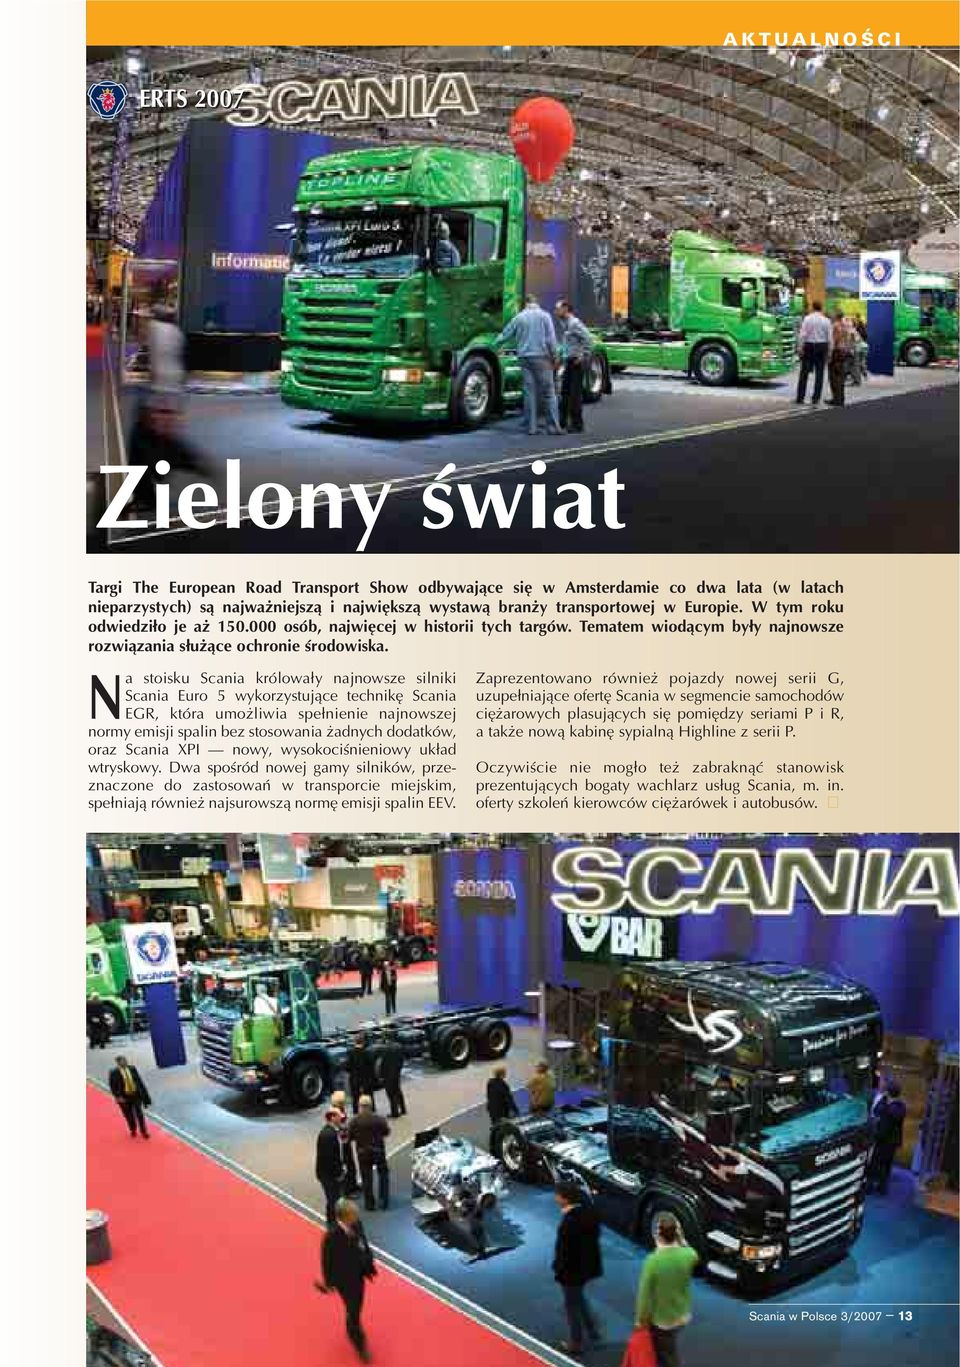 Na stoisku Scania królowa³y najnowsze silniki Scania Euro 5 wykorzystuj¹ce technikê Scania EGR, która umo liwia spe³nienie najnowszej normy emisji spalin bez stosowania adnych dodatków, oraz Scania